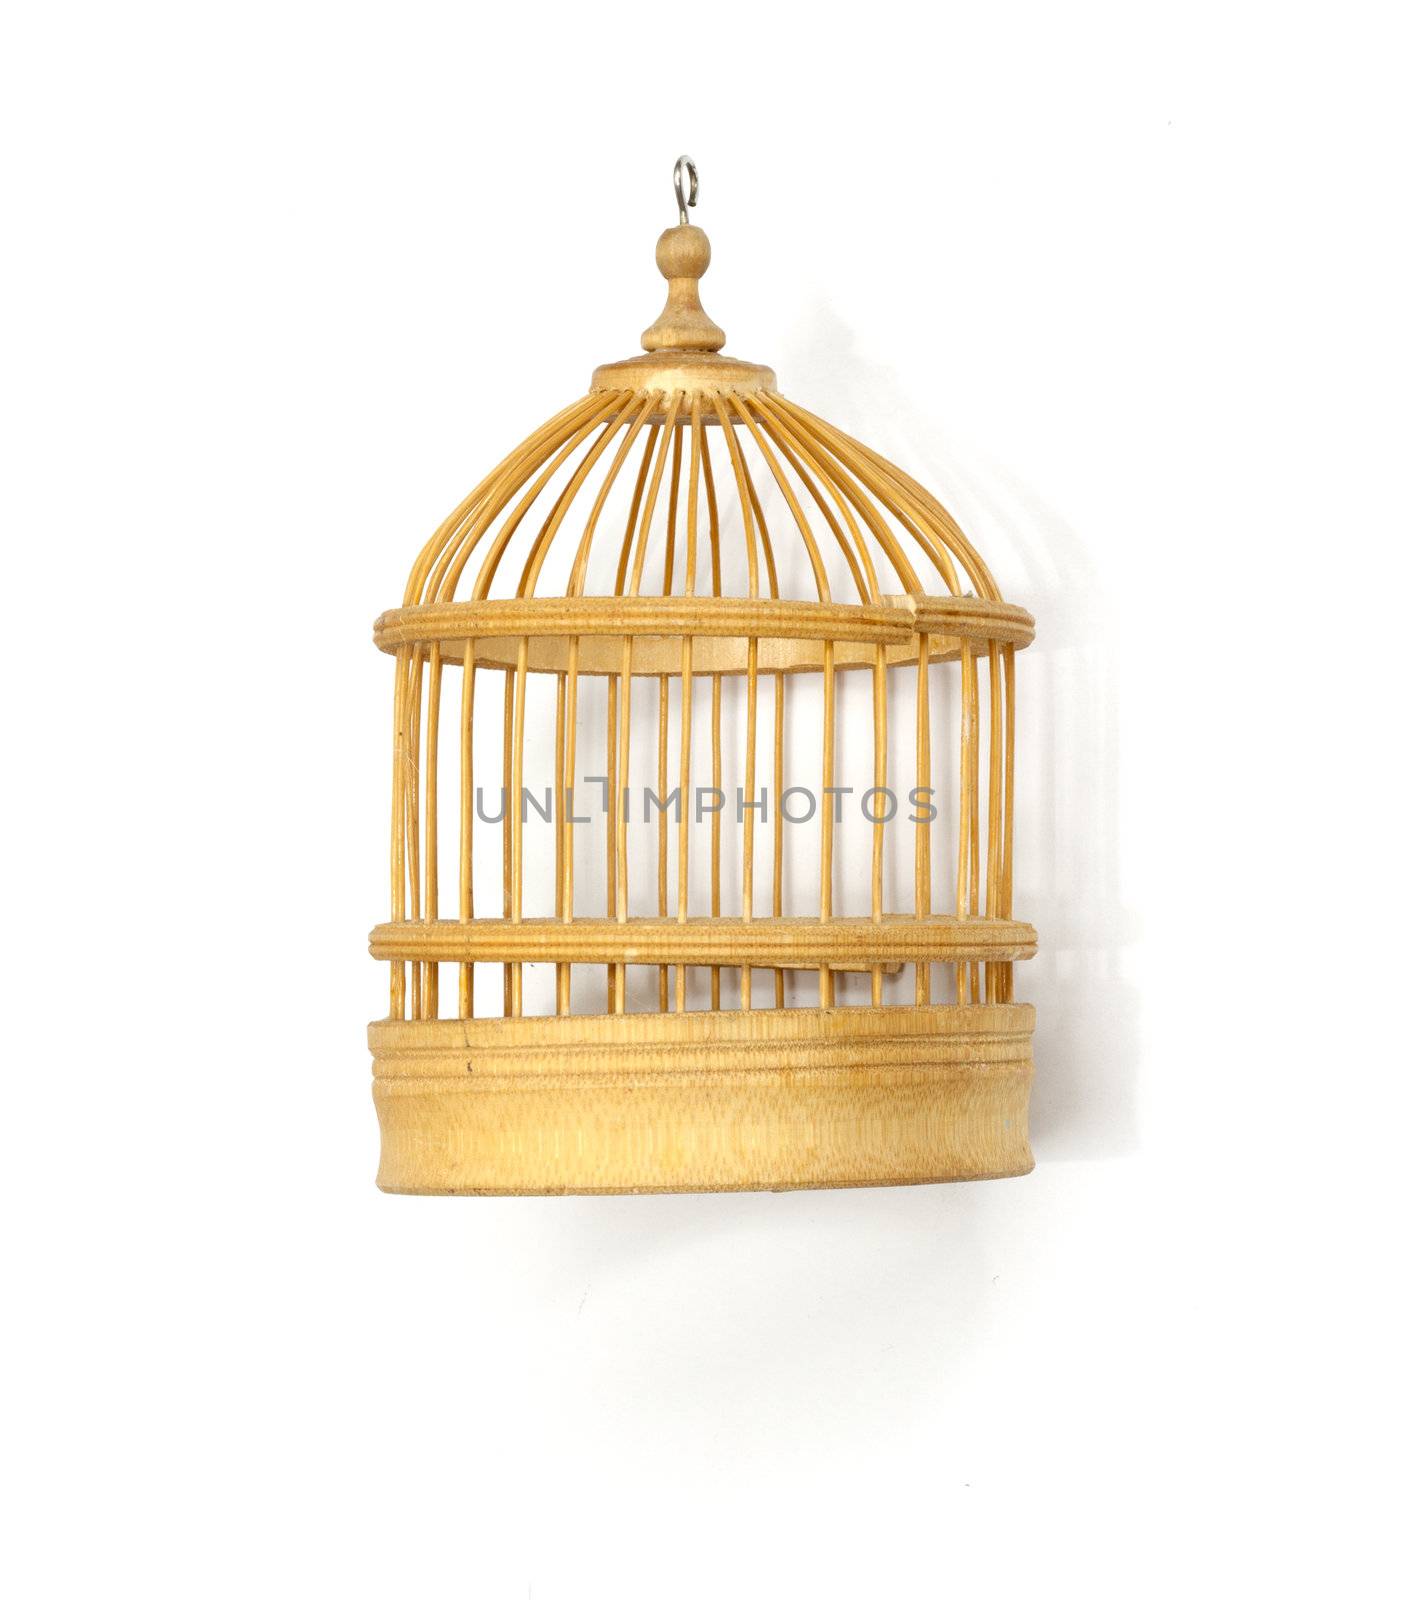 wooden birdcage insulated on white by schankz